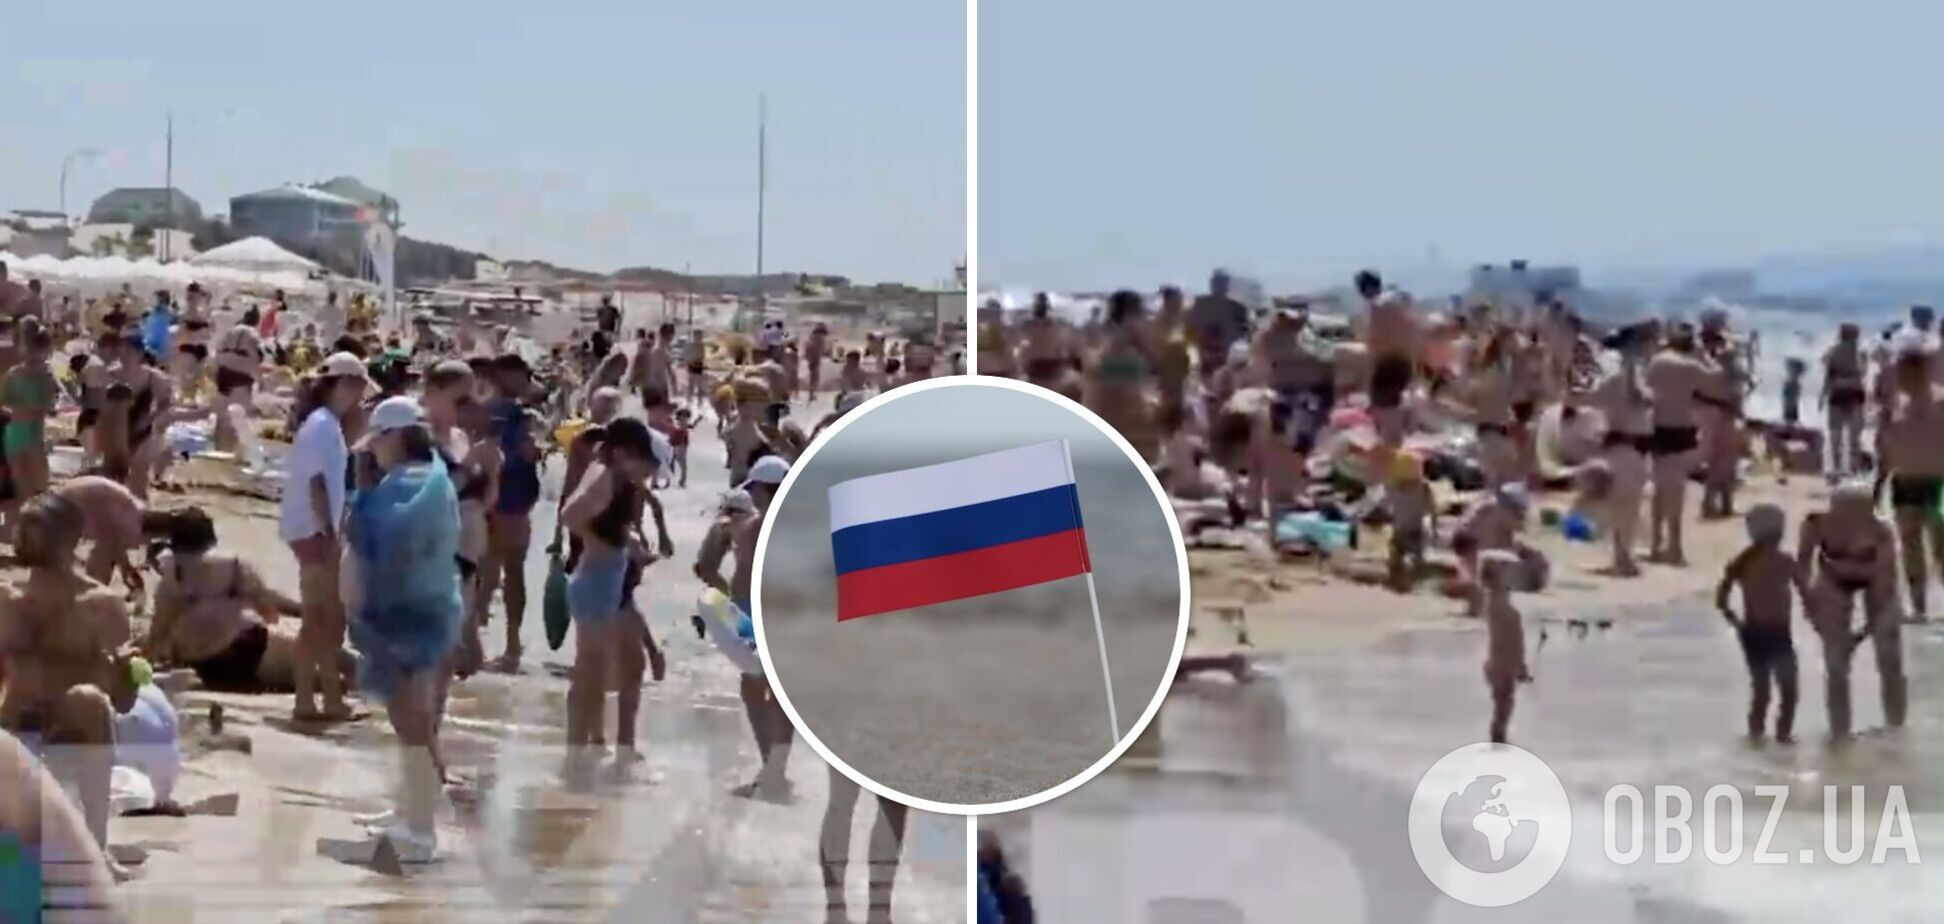 Росіяни злякалися вибухів у Криму і кинулися на рідні пляжі: біля моря тиснява і крики, плавають по черзі. Фото